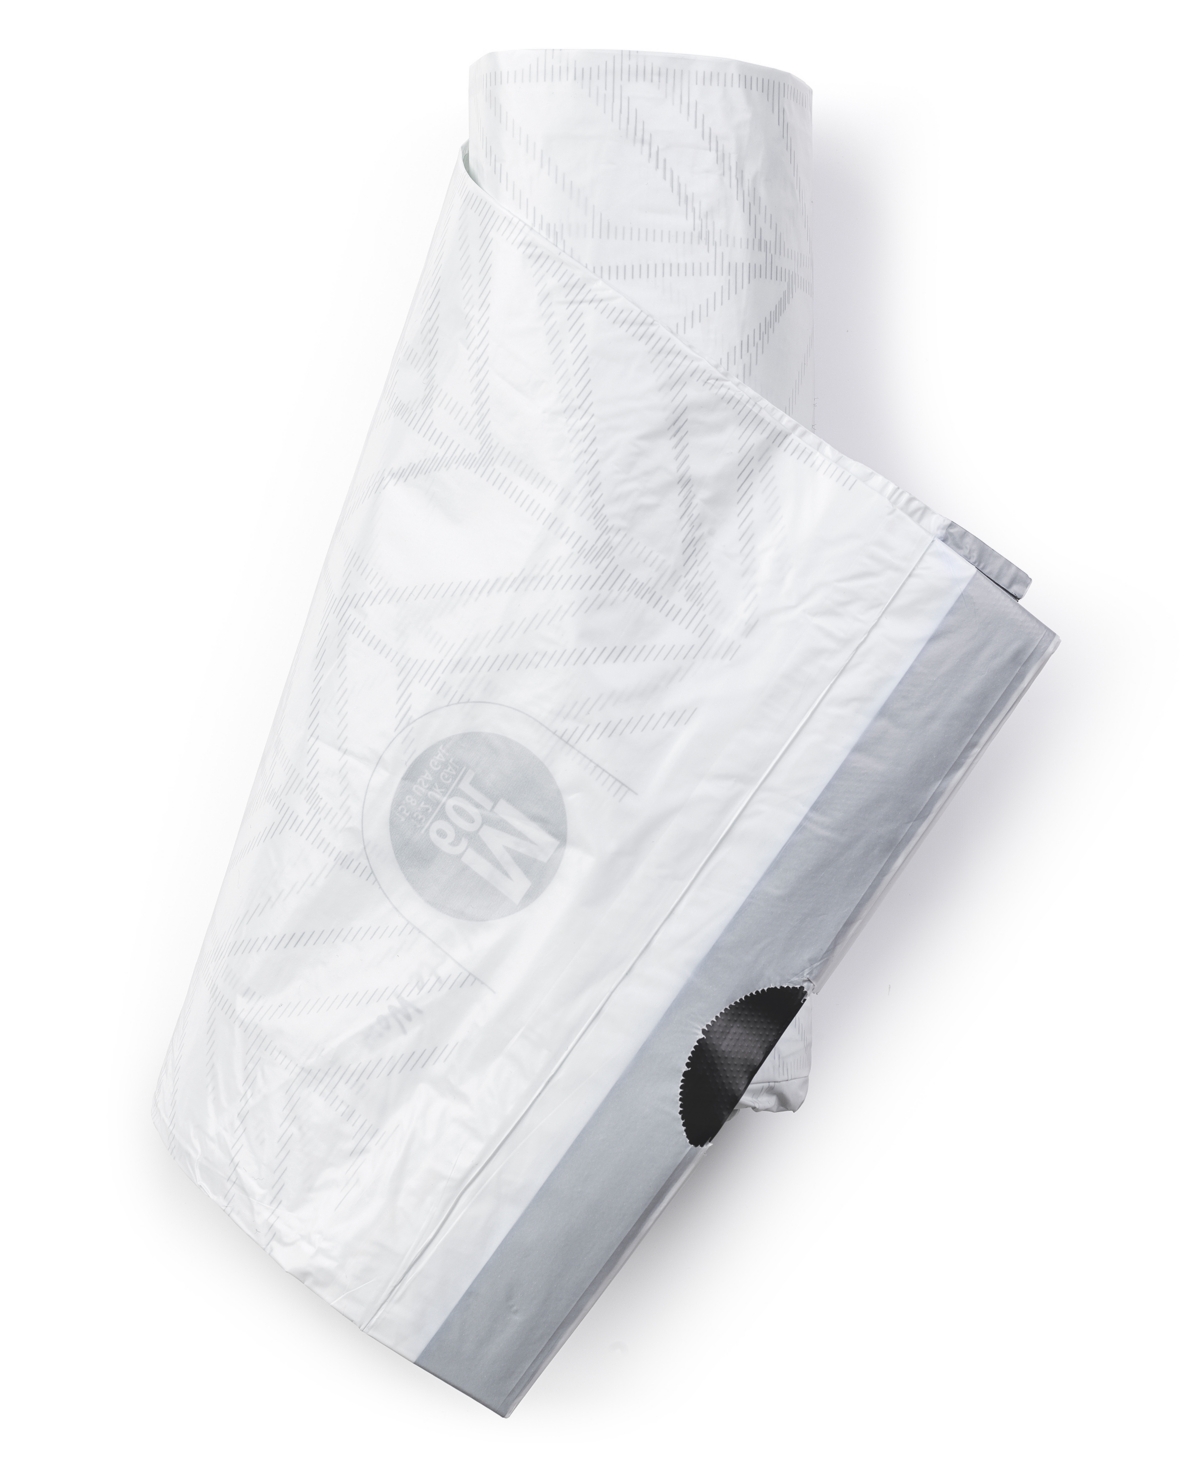 Brabantia 12 Gal. PerfectFit Trash Bags, Code L, (40 L x 45 L) 20